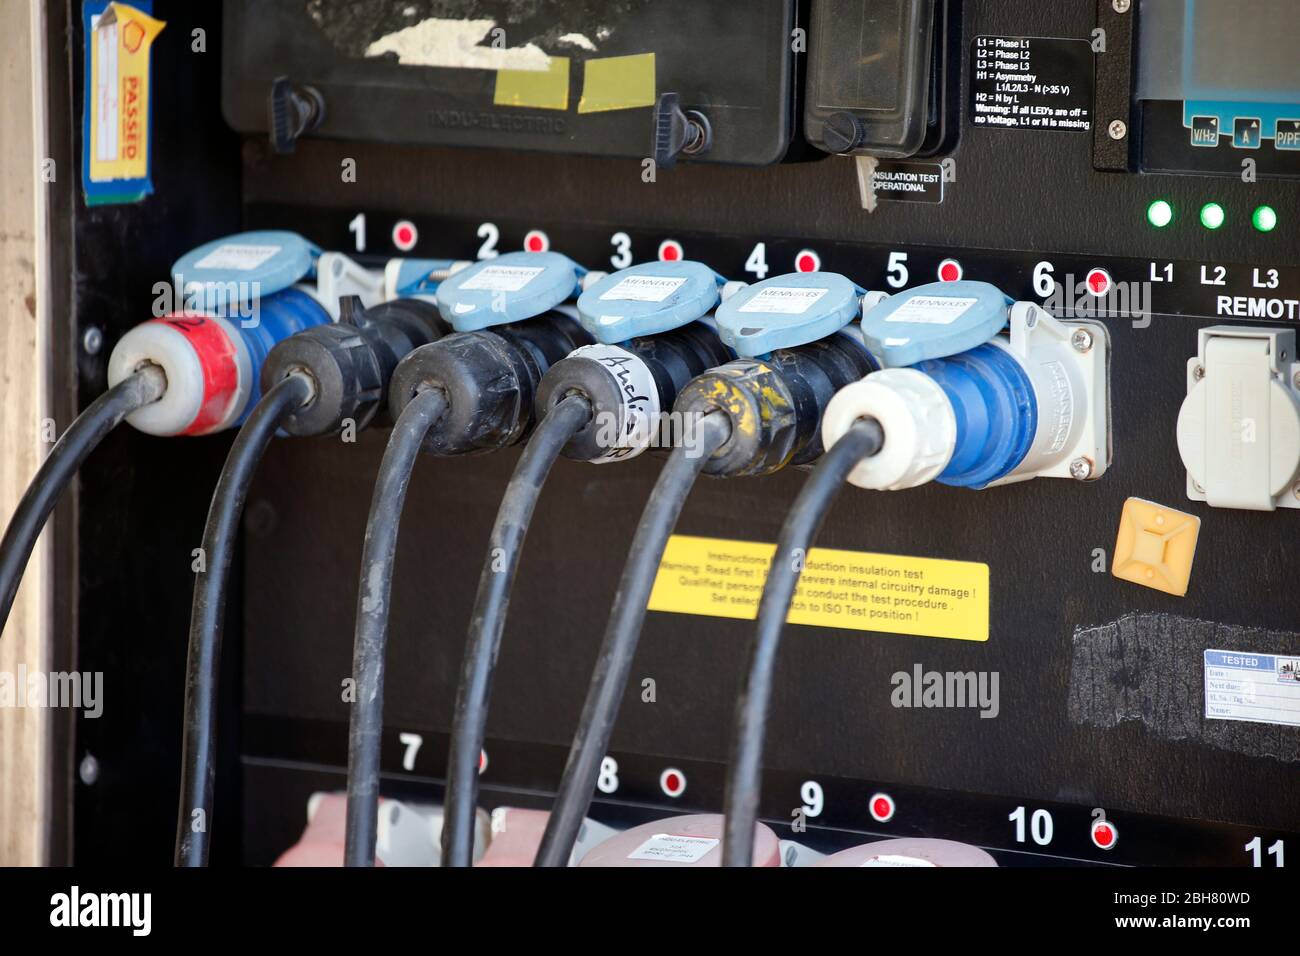 29.02.2020, Doha, , Qatar - distributore di energia in un furgone esterno. 00S200229D095CAROEX.JPG [VERSIONE MODELLO: NON APPLICABILE, VERSIONE PROPRIETÀ: Y Foto Stock